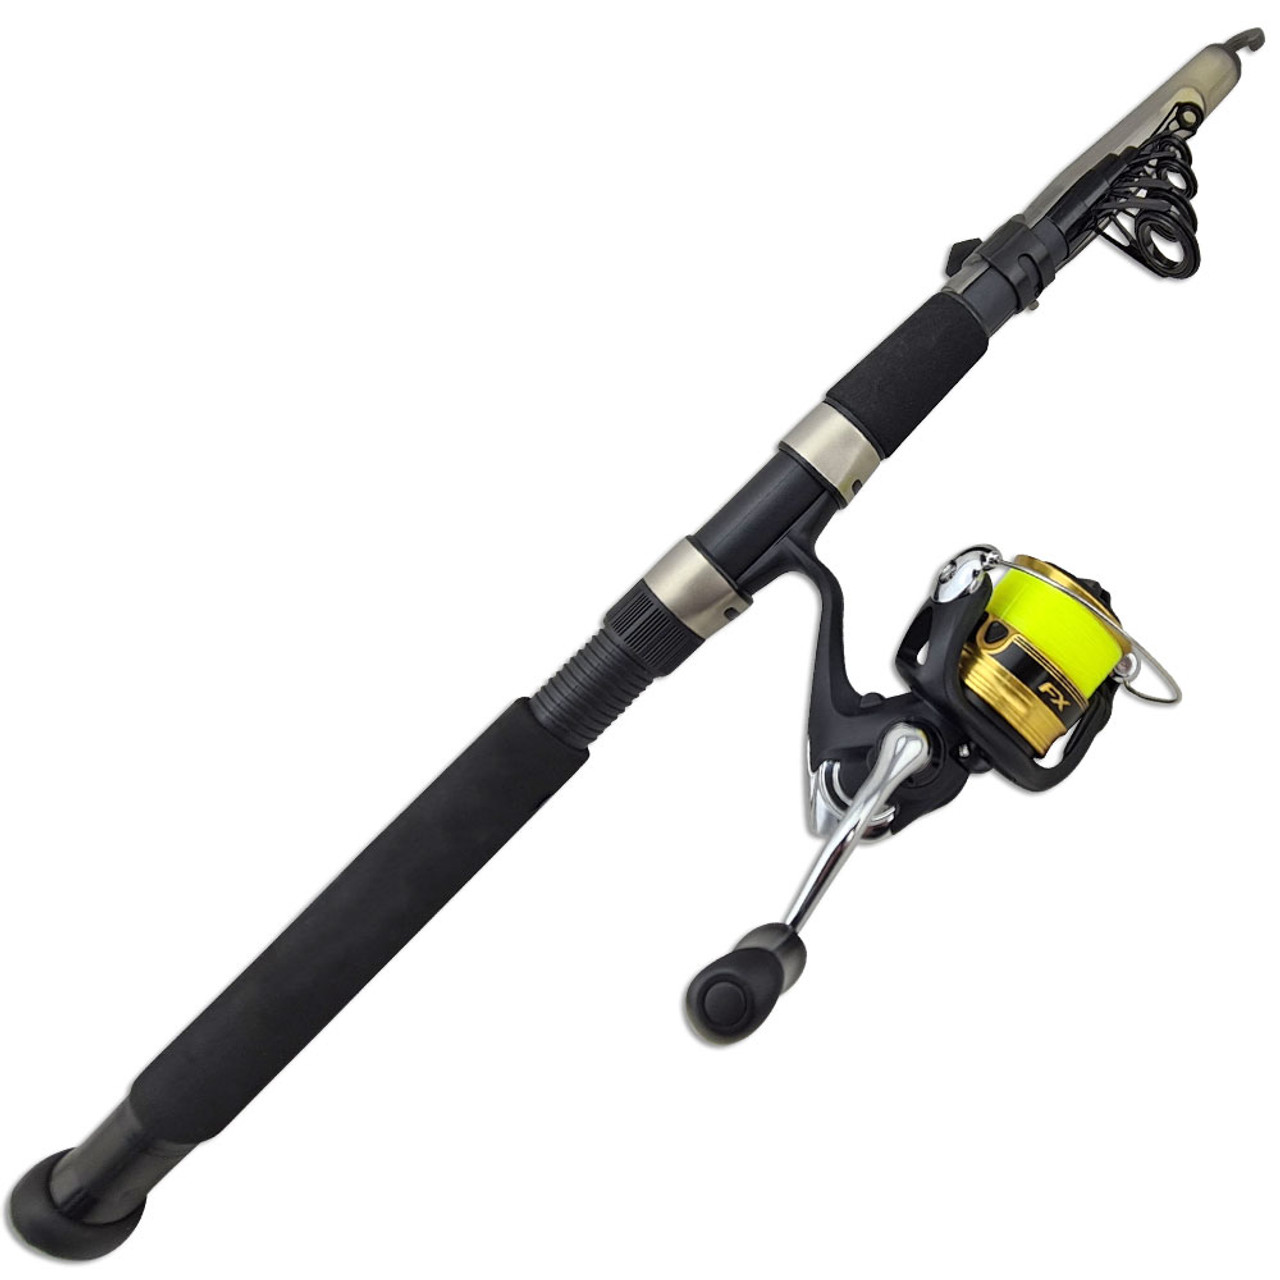 Telescopic Fishing Rod Fishing Rod